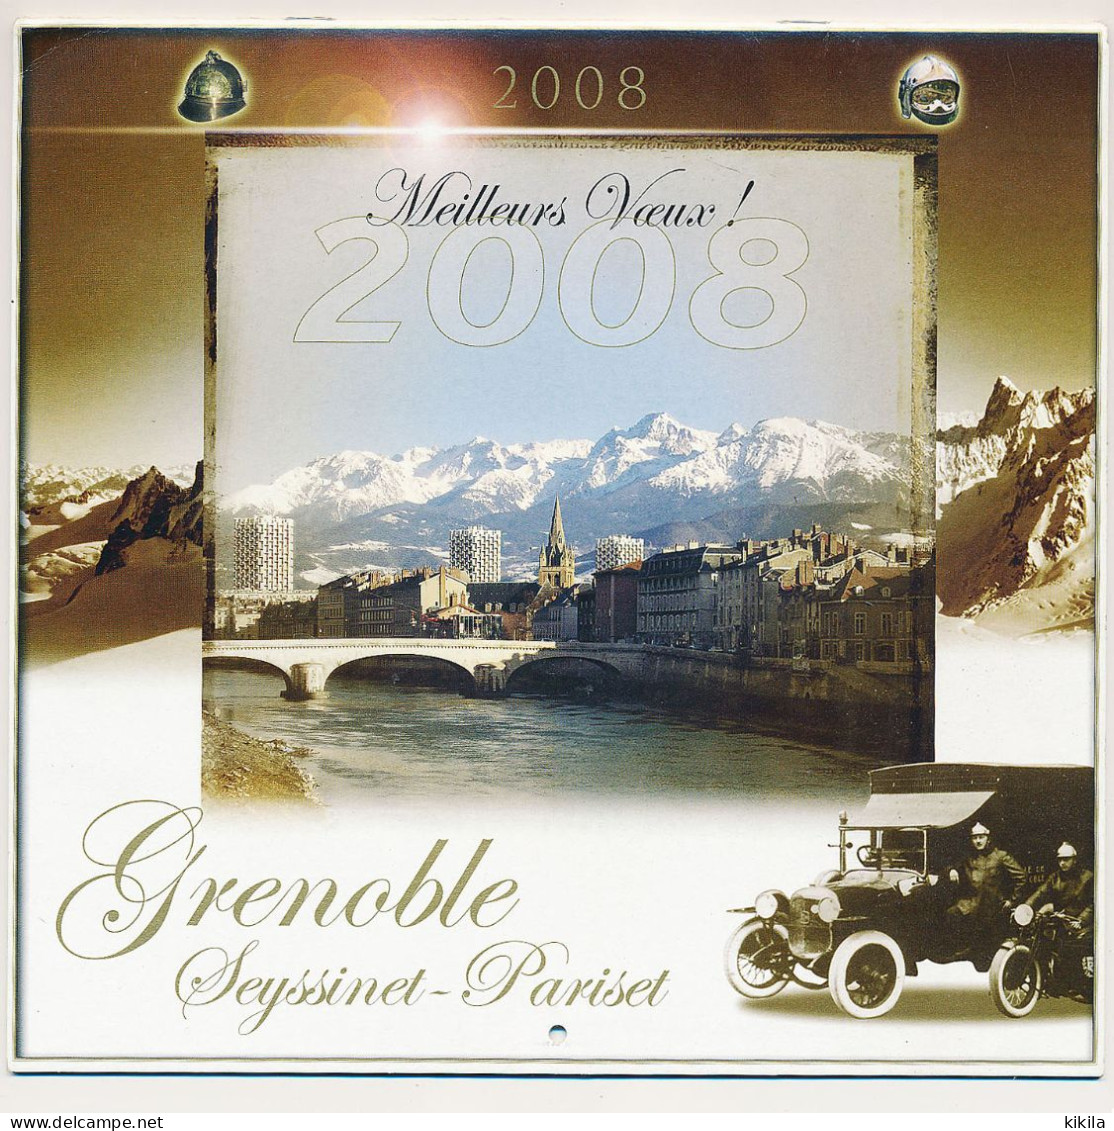 Calendrier Grand Format 2008 Des SAPEURS POMPIERS De Grenoble Seyssinet-Pariset Isère - Grossformat : 2001-...